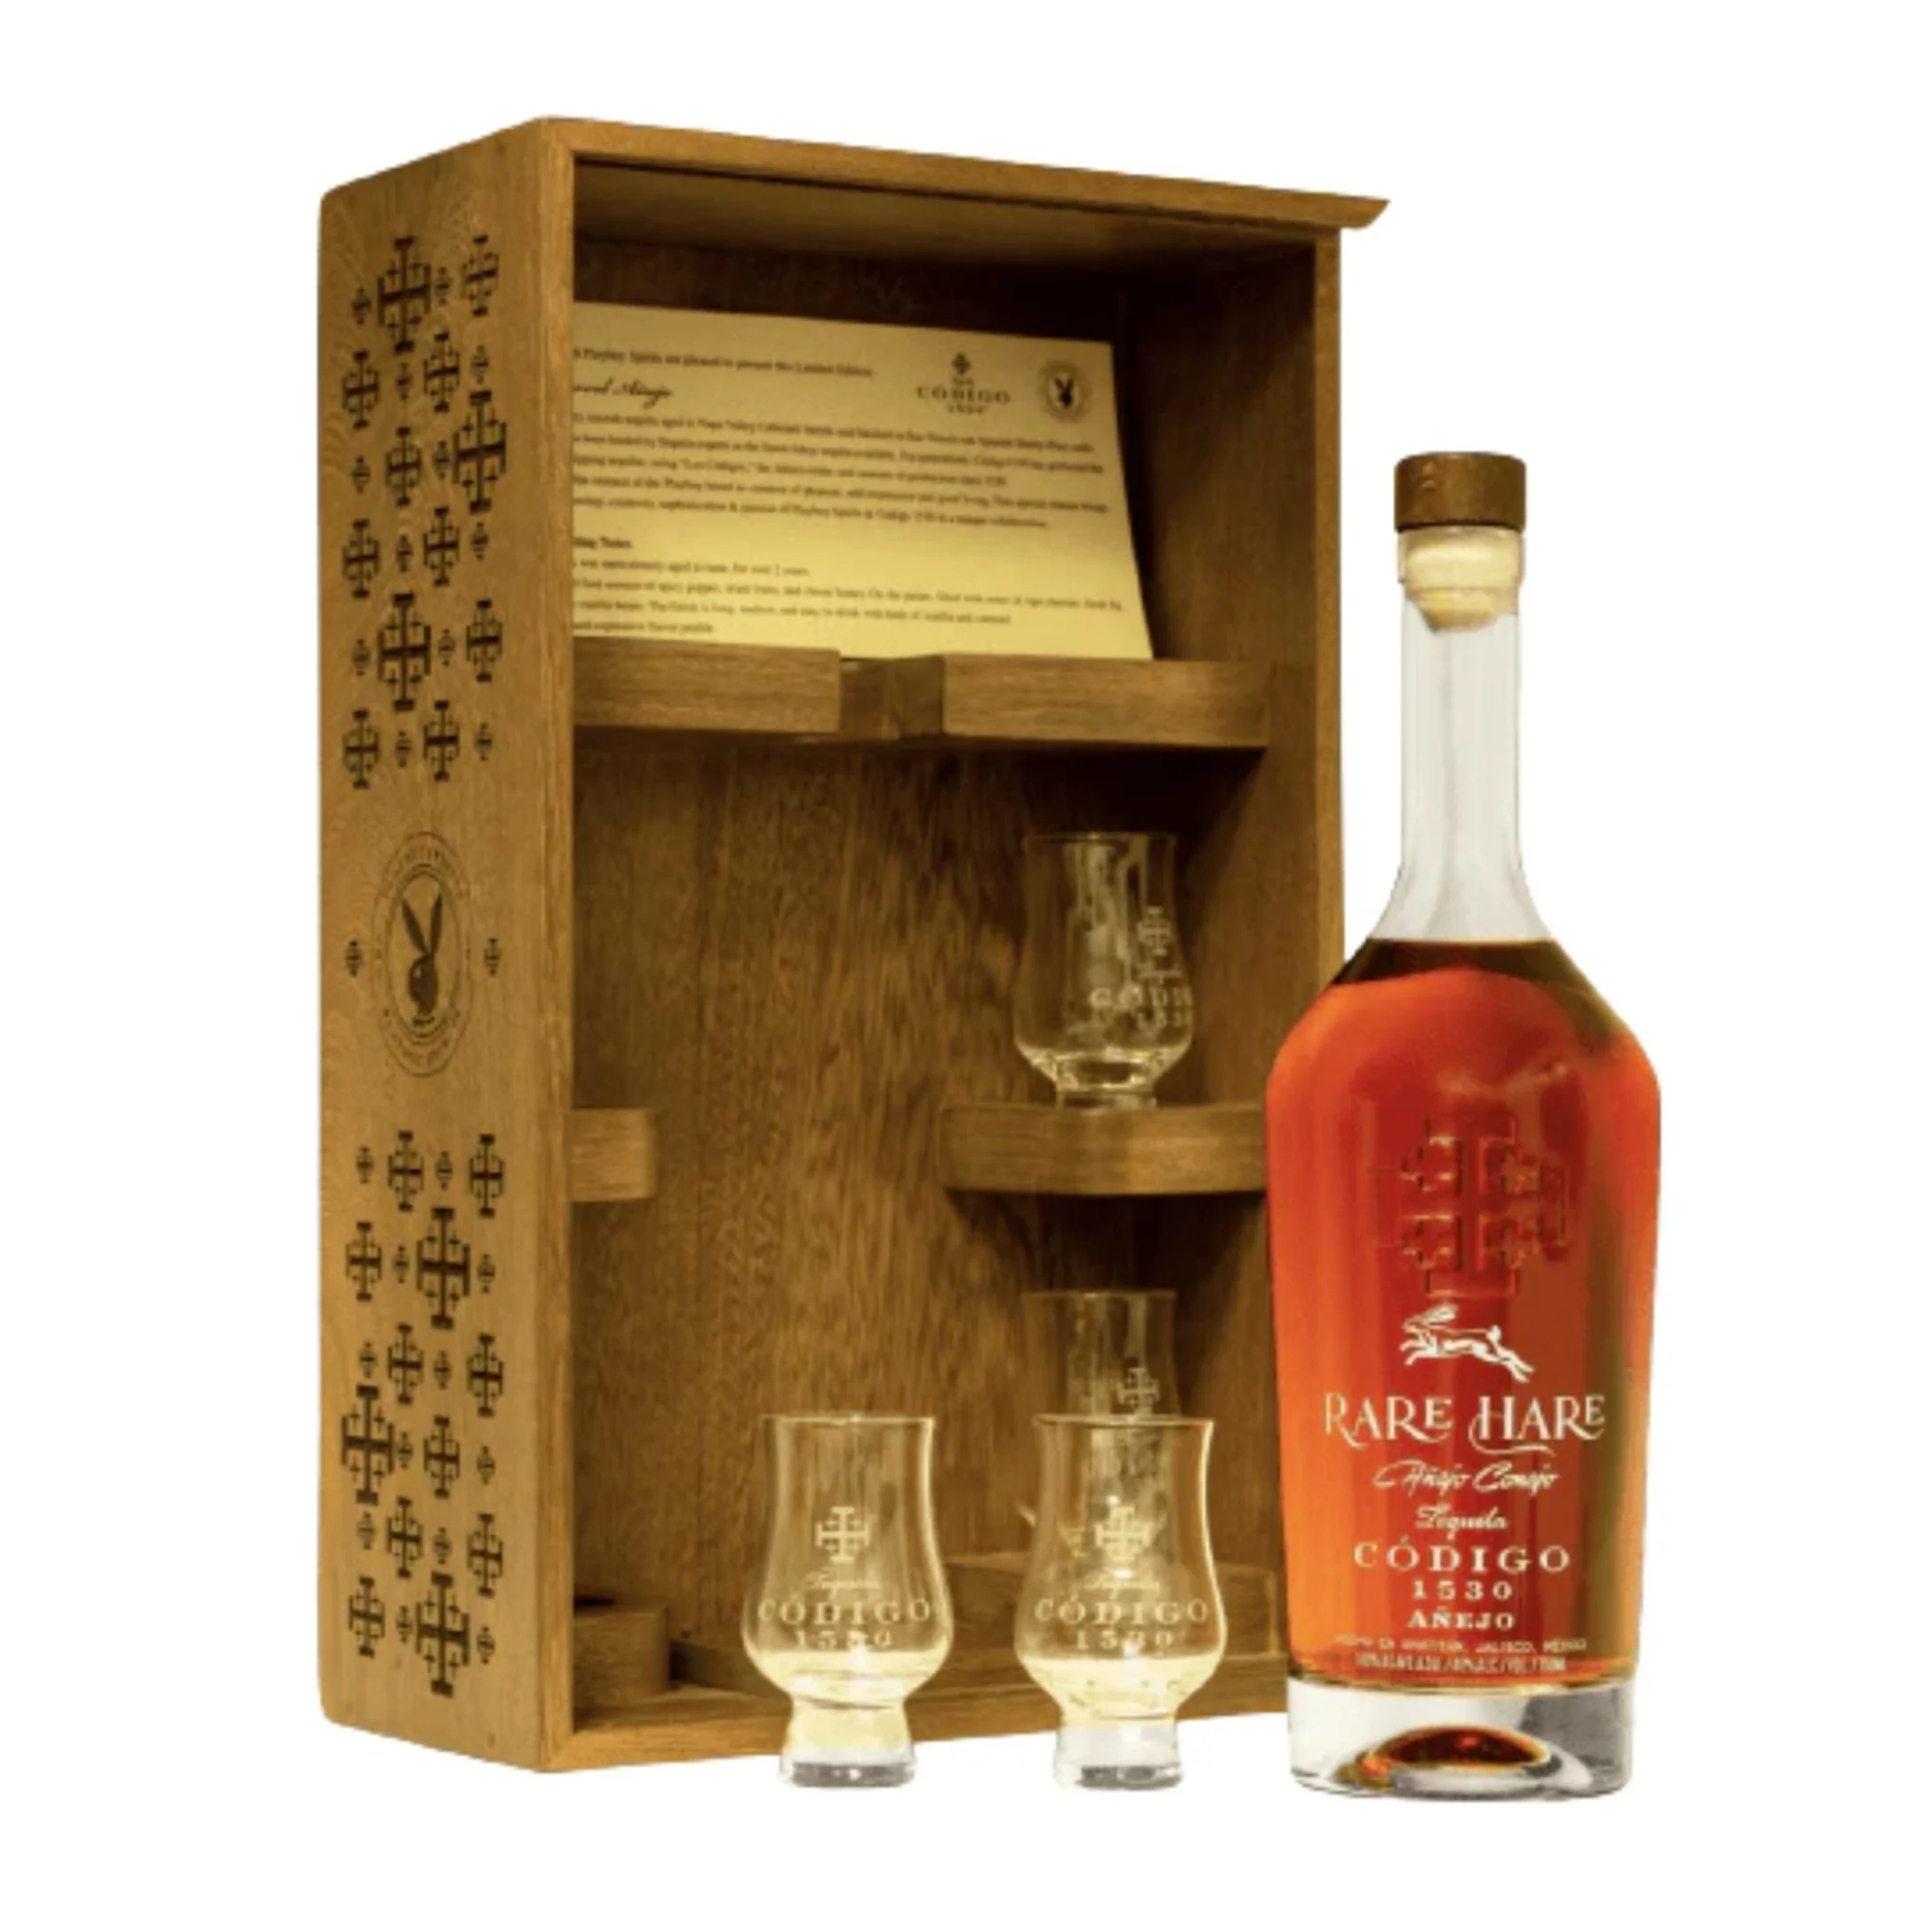 Codigo 1530 Tequila Rare Hare Anejo Cognac W/ Flute Glasses - Liquor Geeks